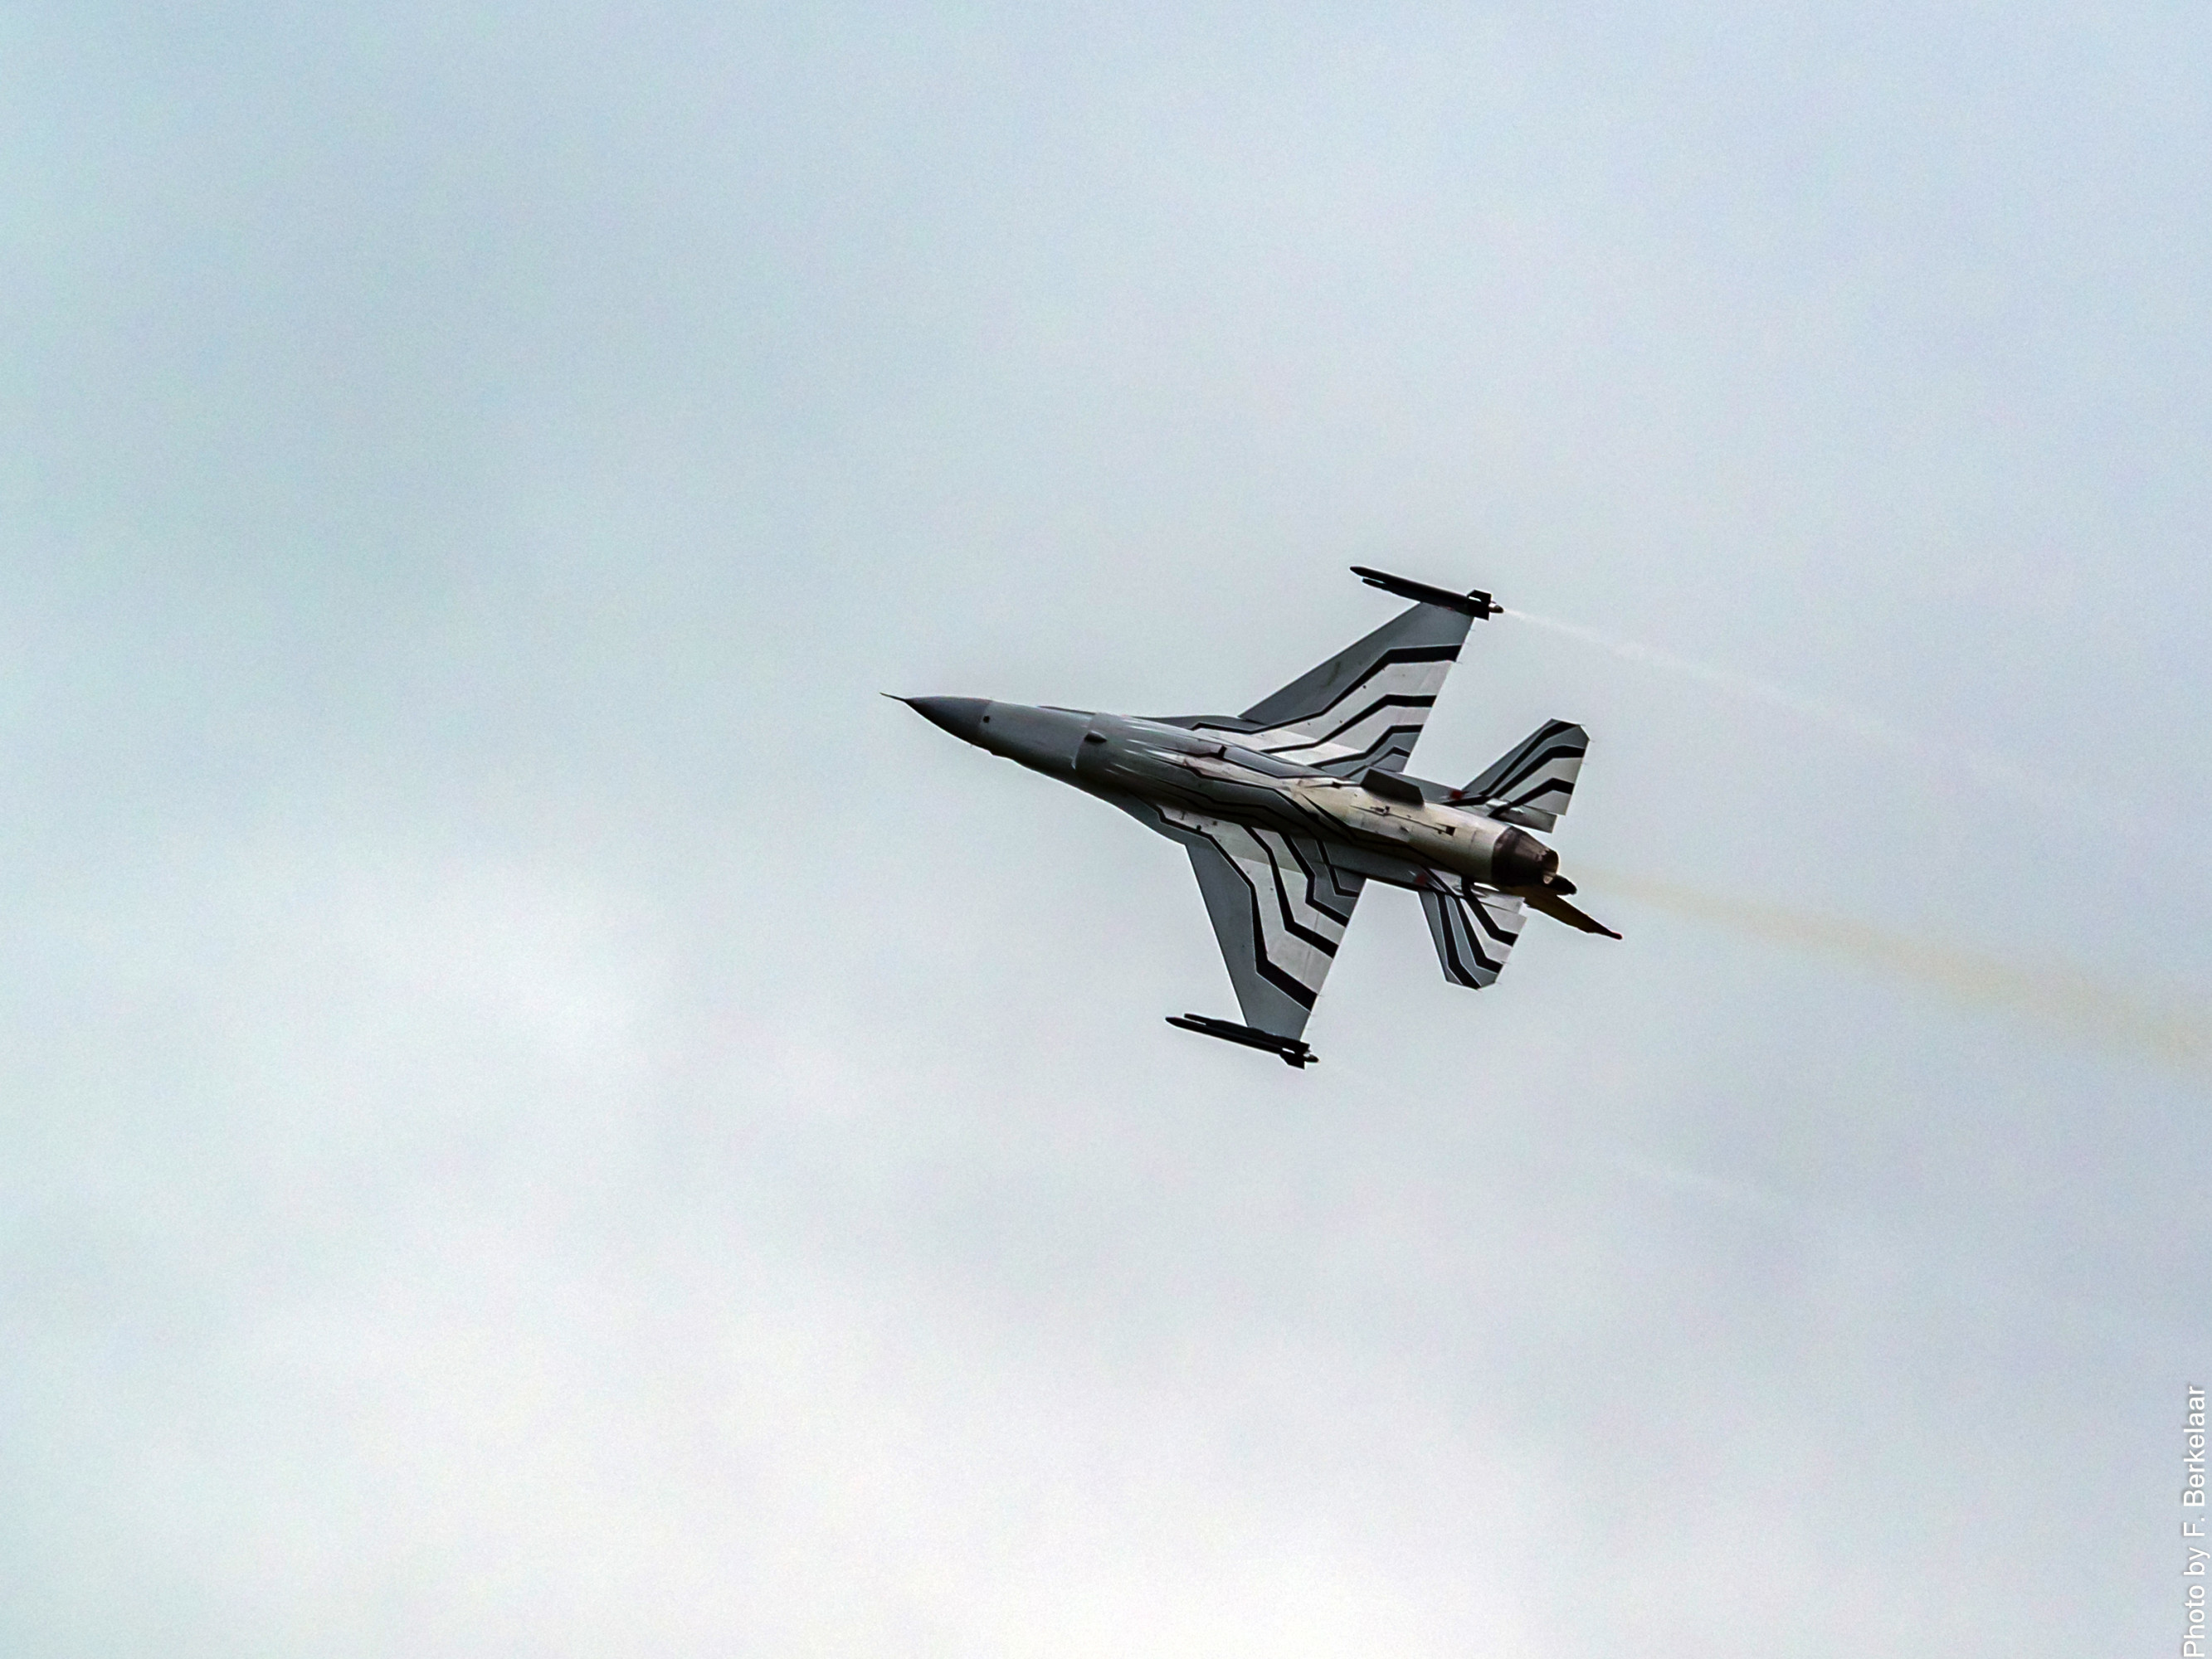 «Байден, прекрати тянуть время»: депутат Рады разозлилась на США из-за затягивания обучения украинцев пилотированию F-16